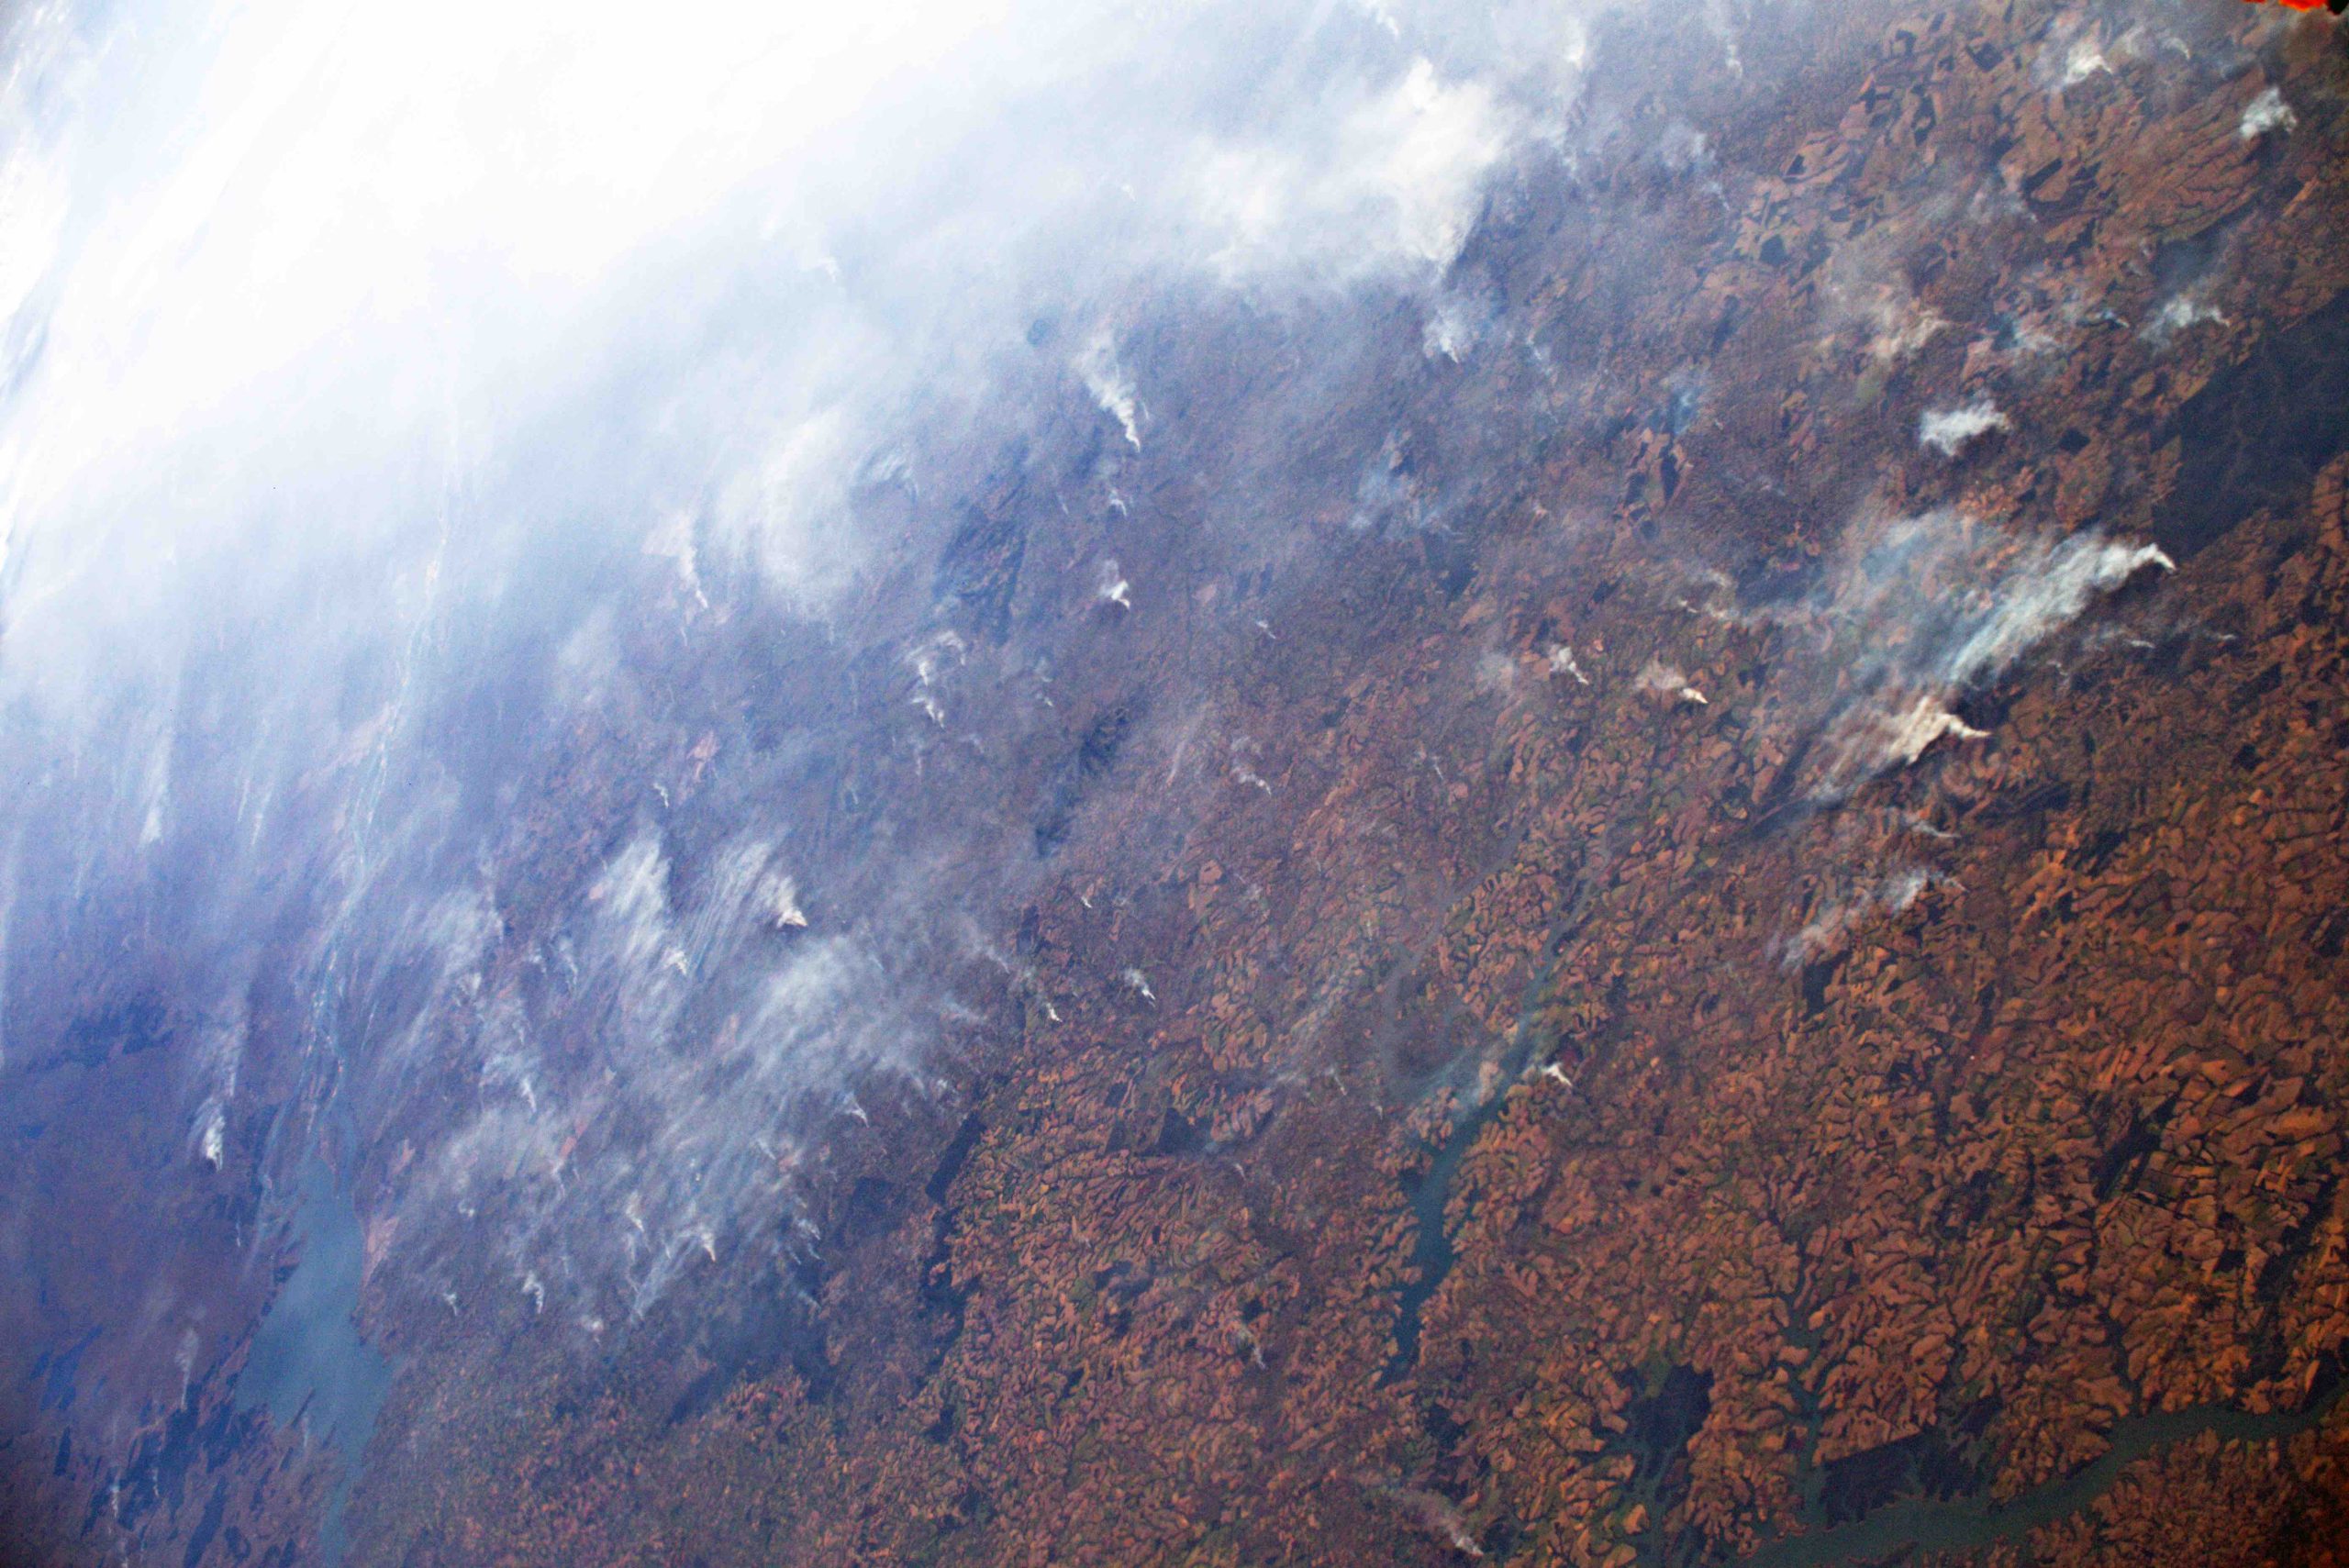 Fuegos en el Amazonas en agosto de 2019, vistos desde la Estación Espacial Internacional. Imagen: ESA/NASA – L. Parmitano, CC BY 3.0